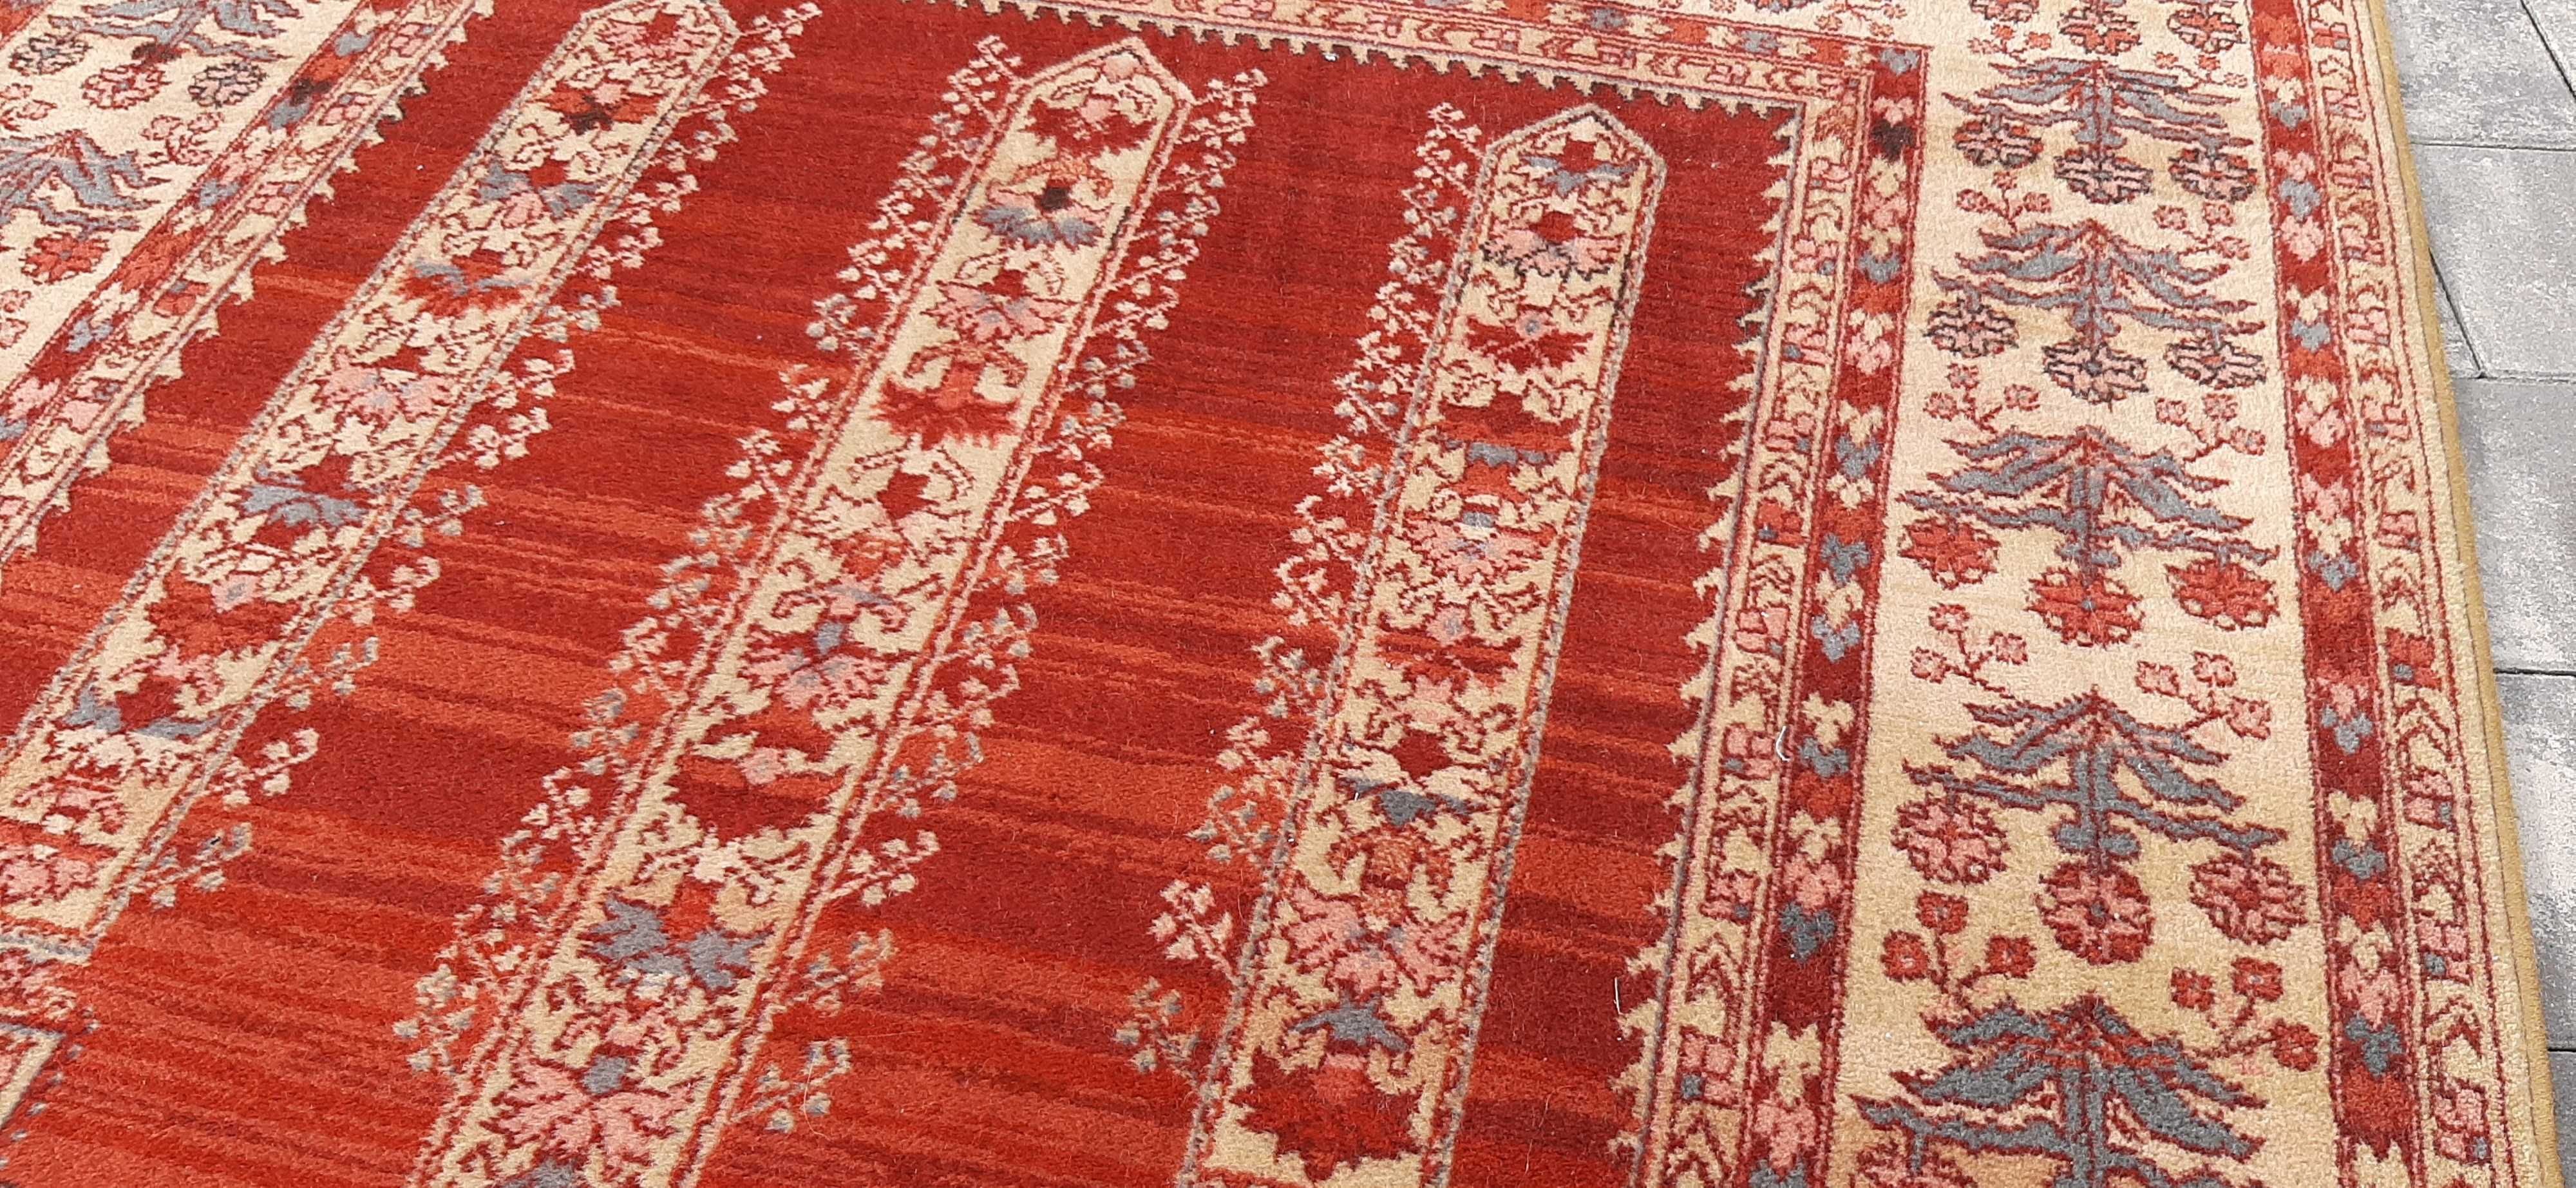 Samarkand dywan wełniany od Louis De Poortere 191 x 136 cm wełna